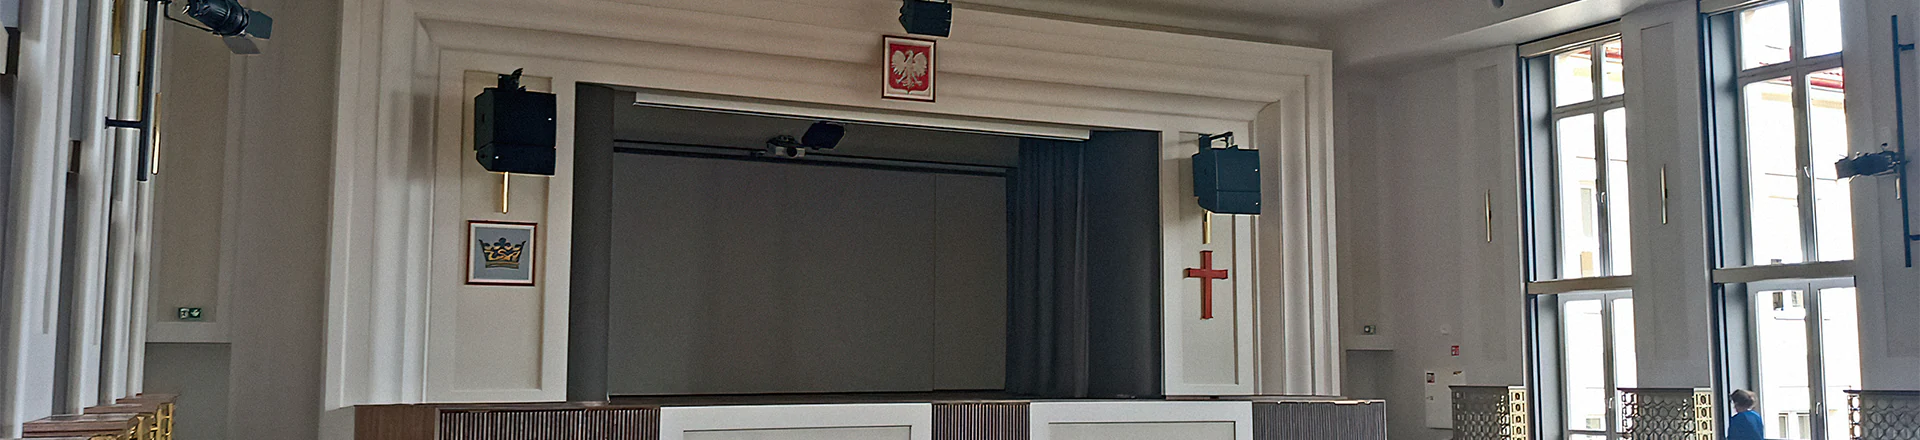 Ciekawe instalacje: System nagłośnienia scenicznego Auli Szkolnej Zespołu Szkół nr 1 w Mińsku Mazowieckim